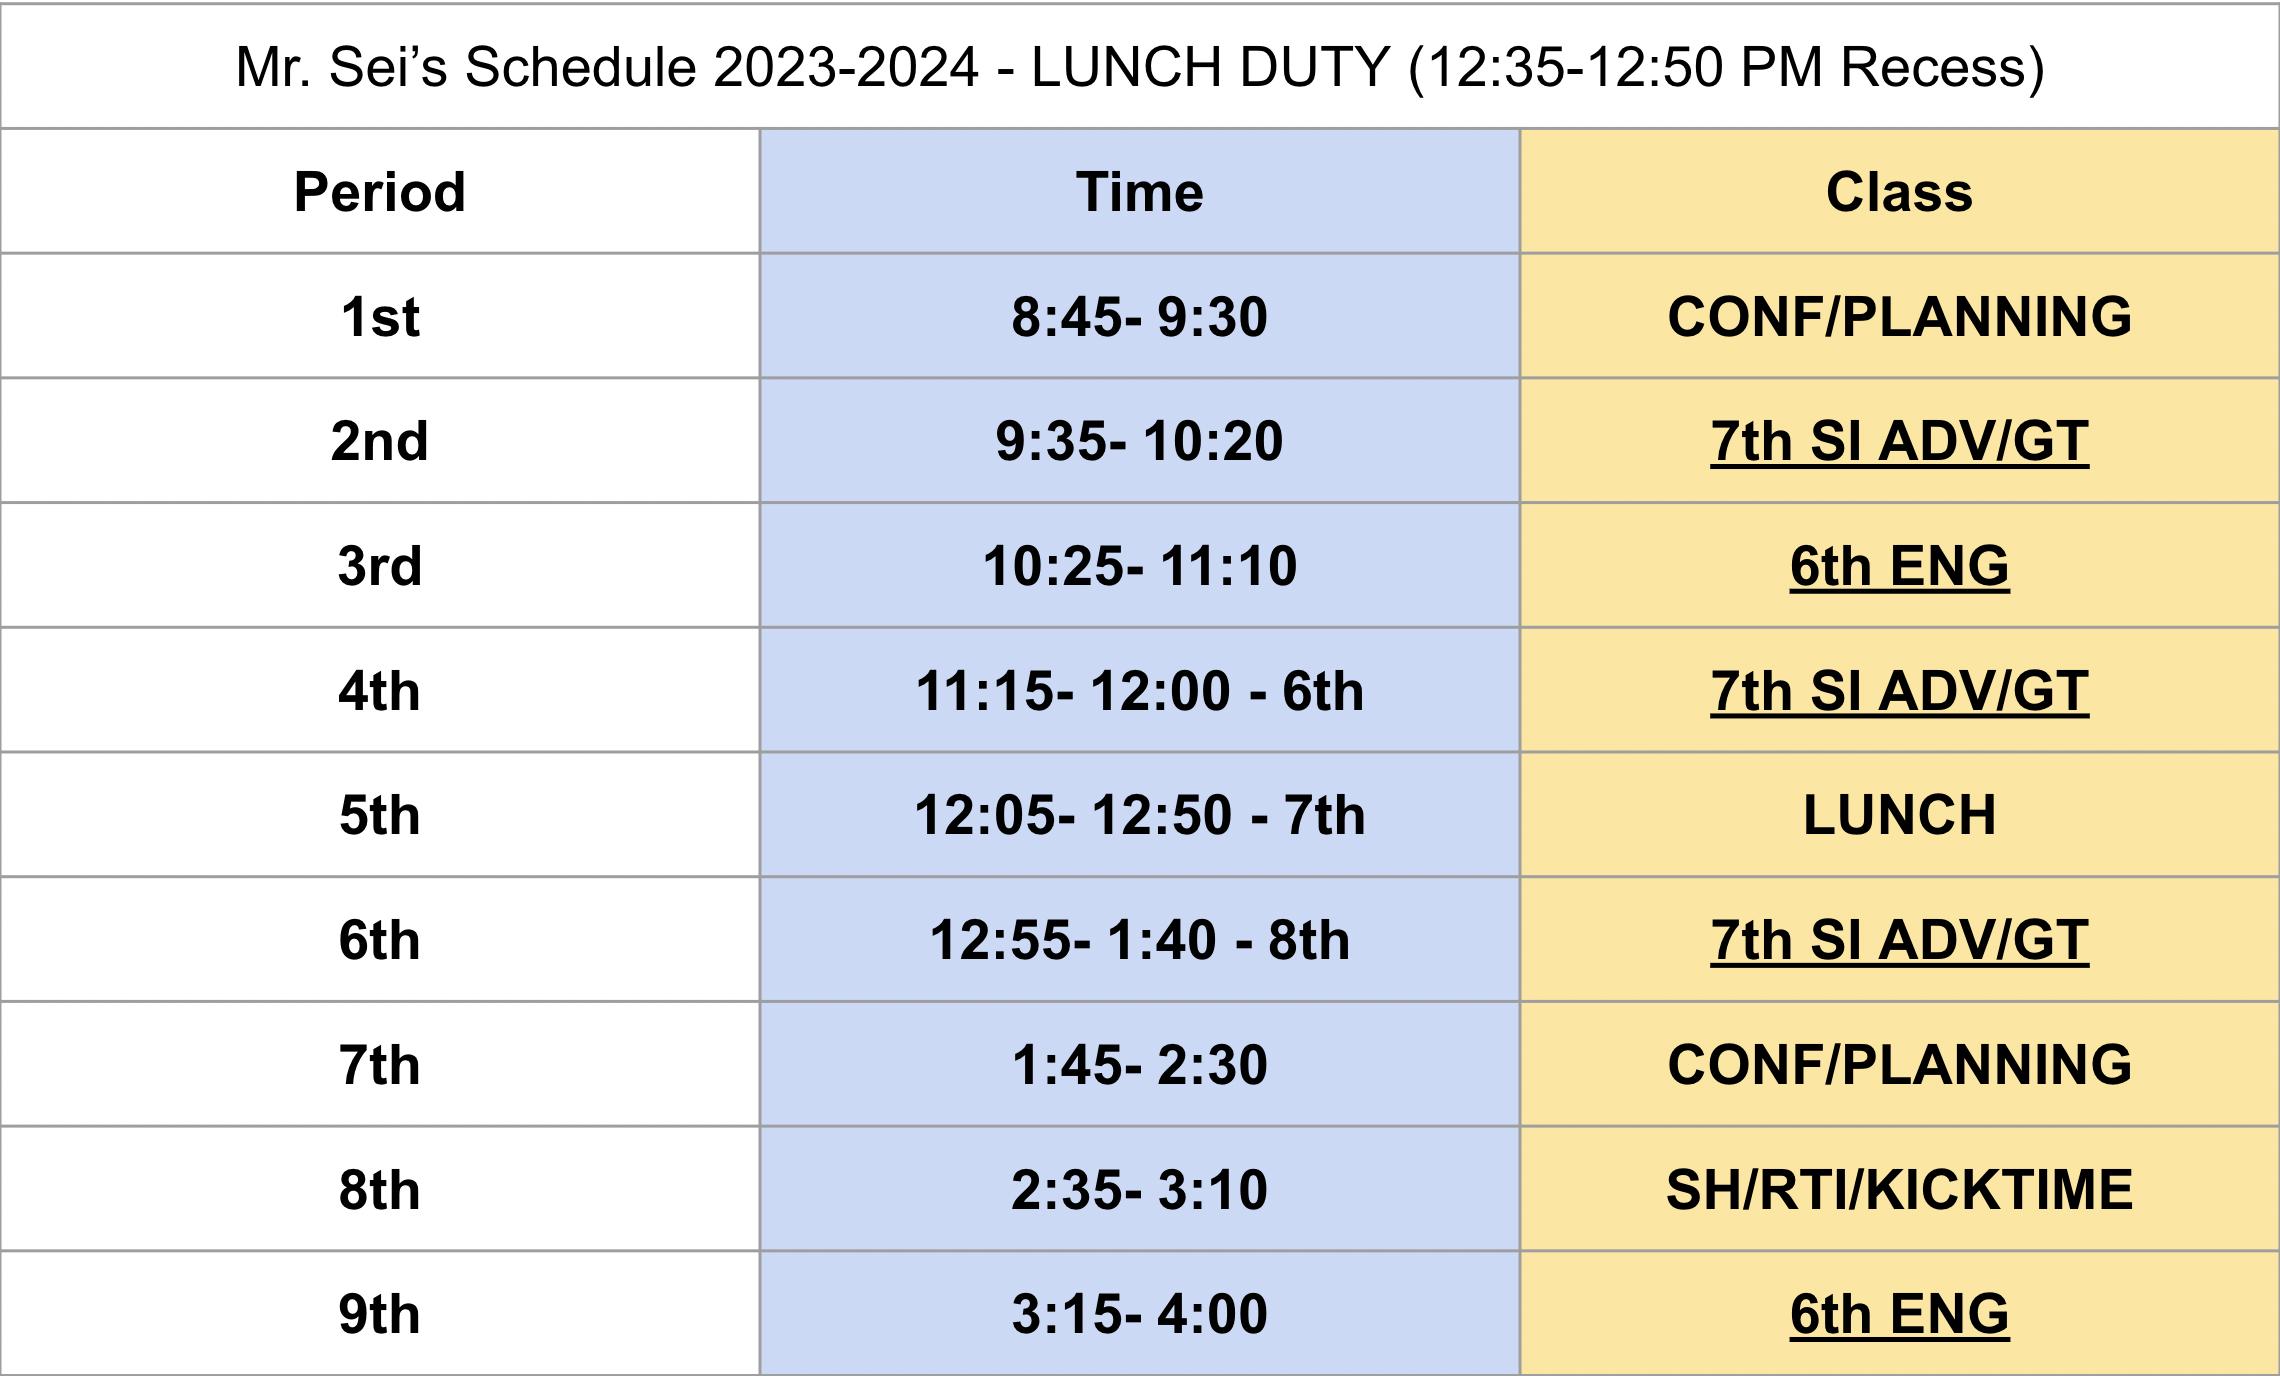 Mr. Sei's Schedule image